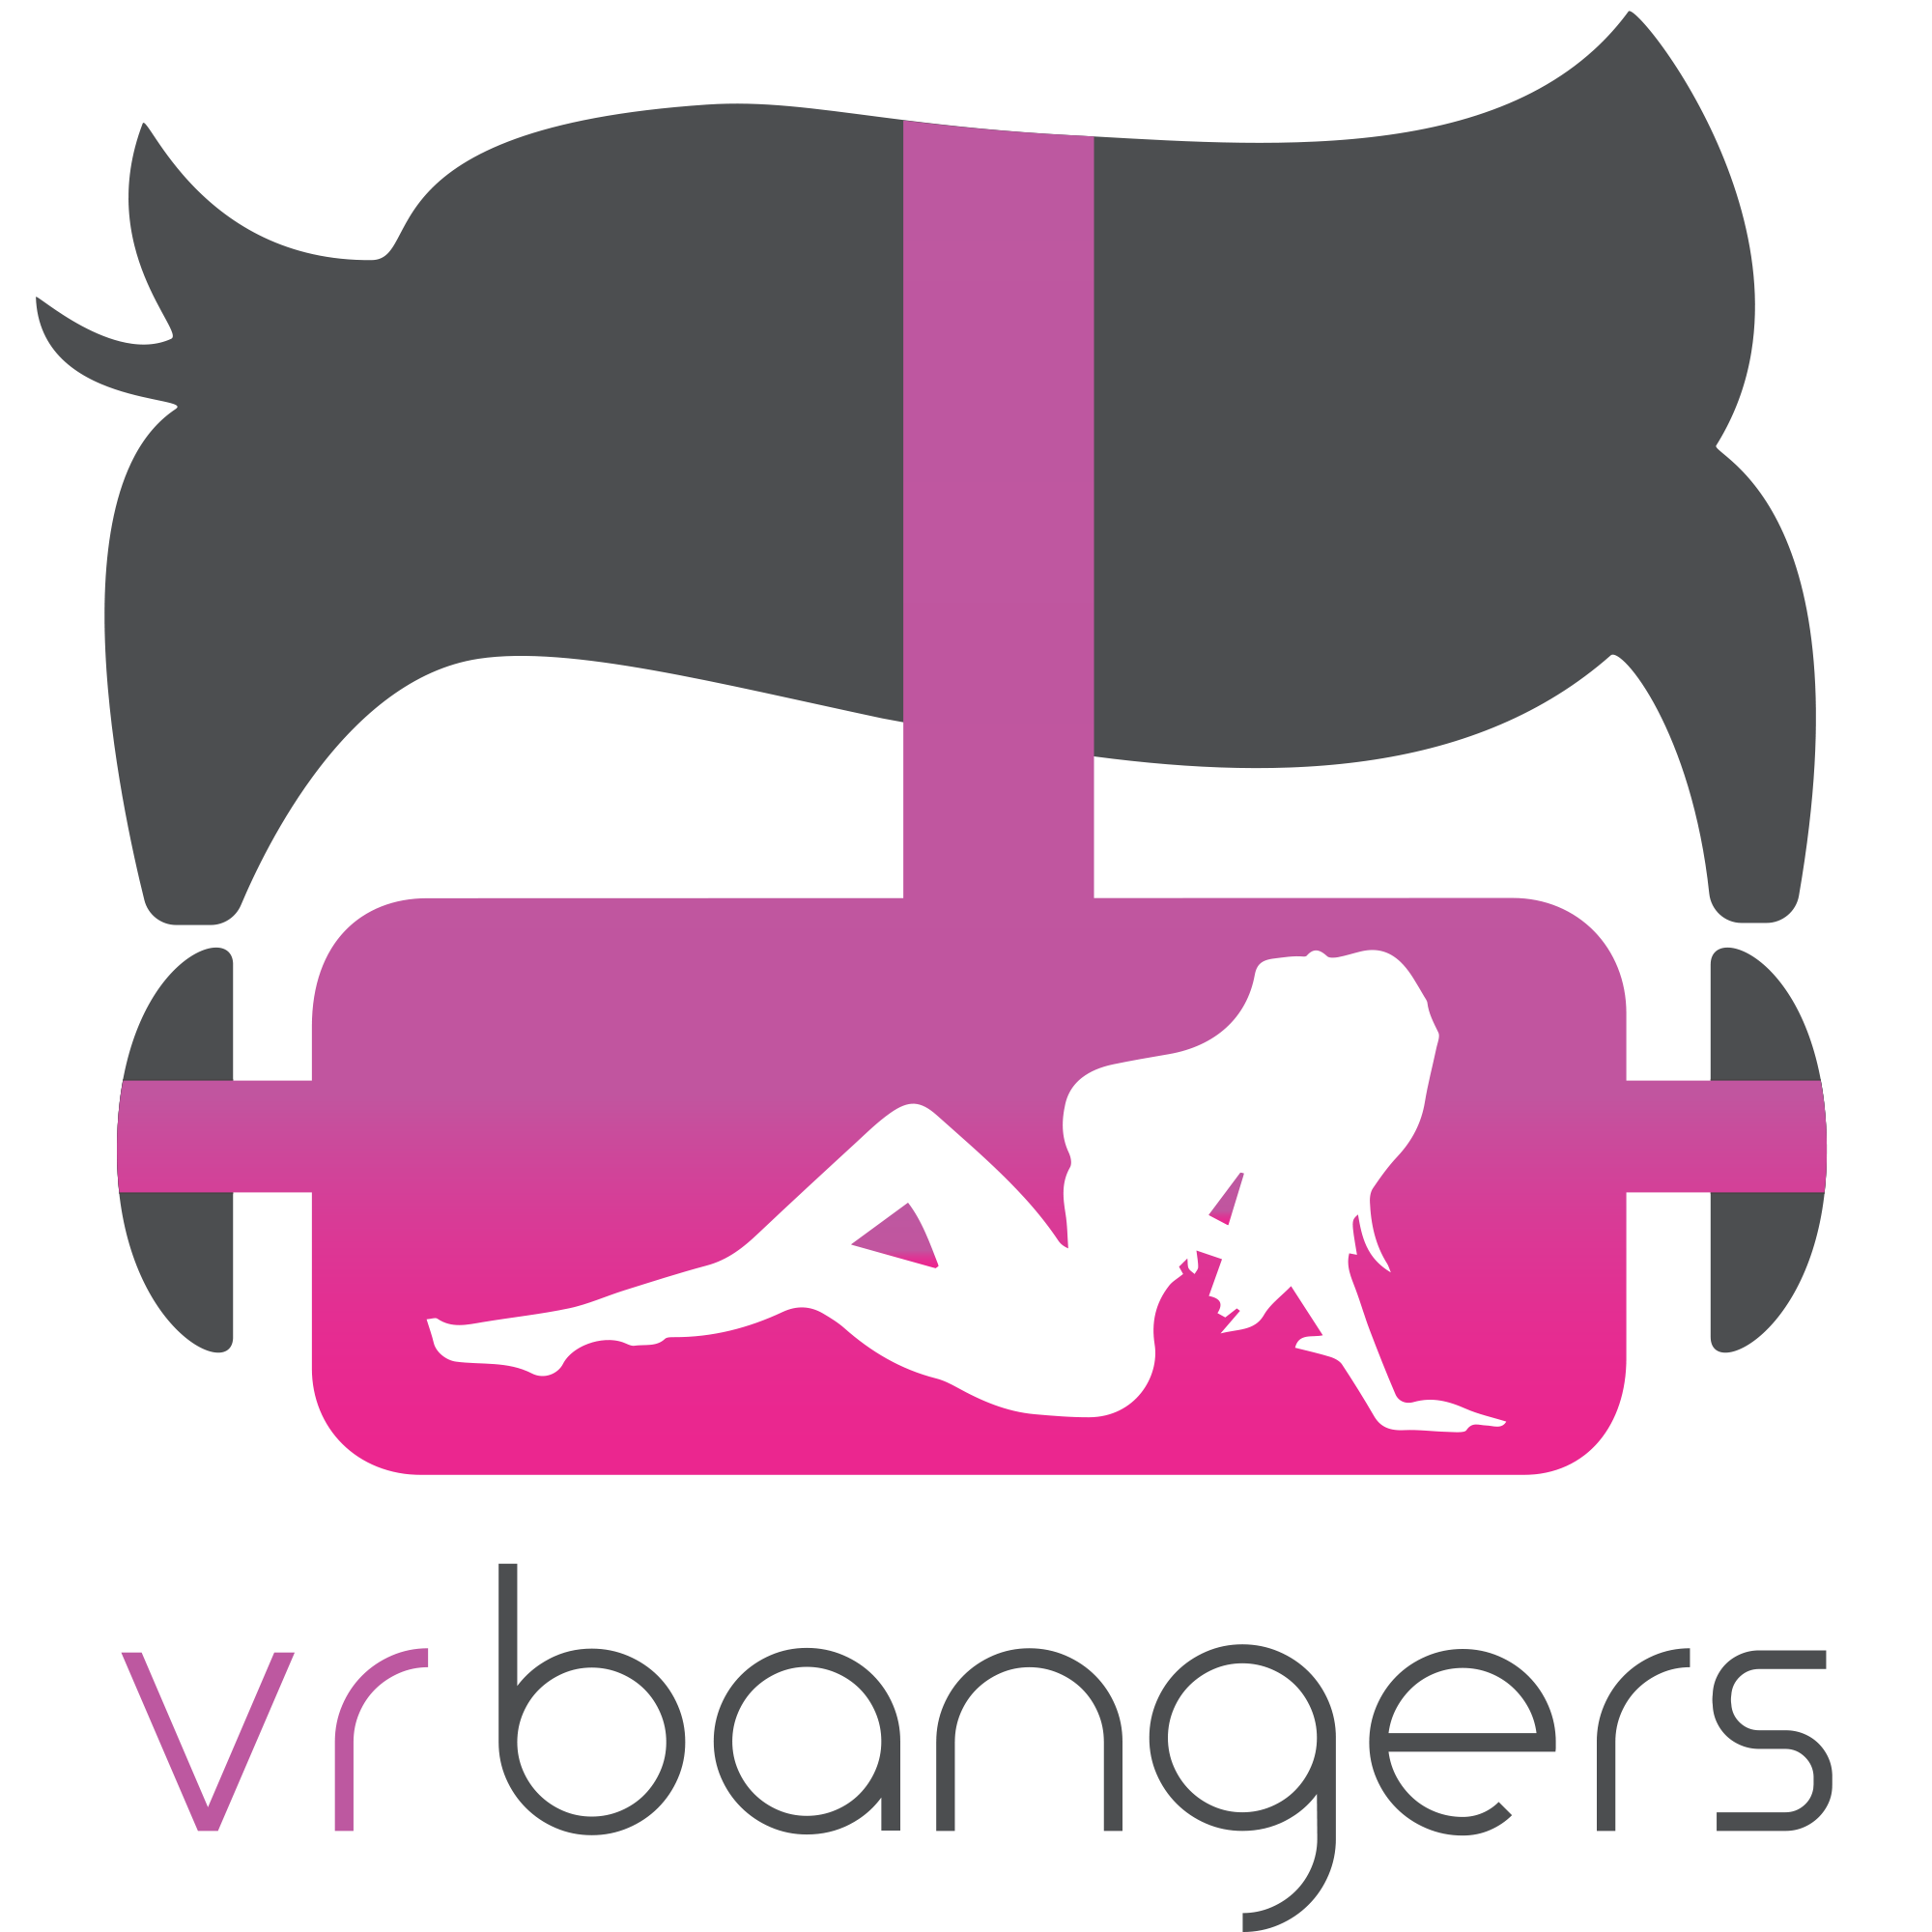 vrbangers logo